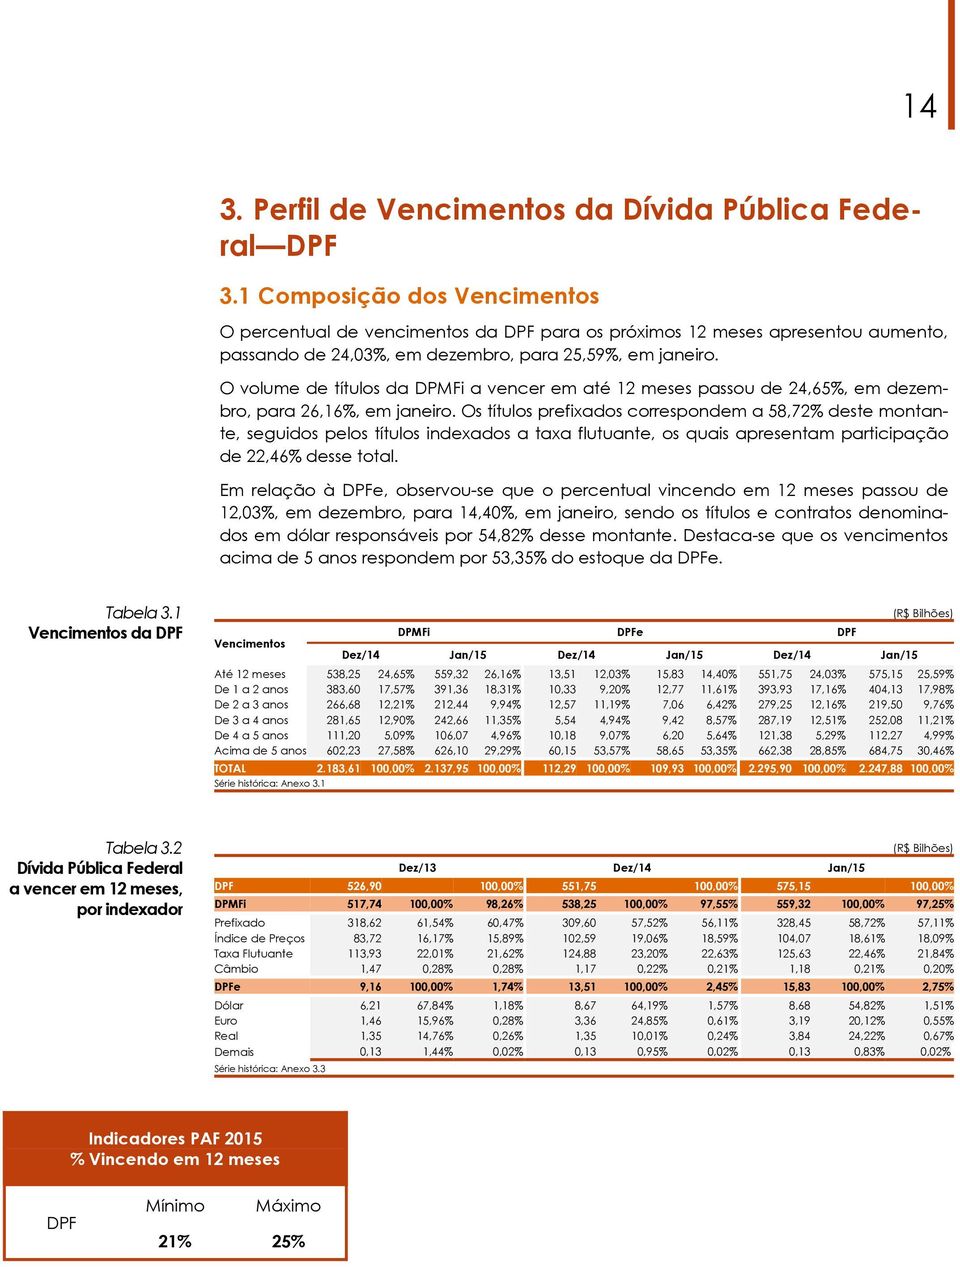 O volume de títulos da DPMFi a vencer em até 12 meses passou de 24,65%, em dezembro, para 26,16%, em janeiro.